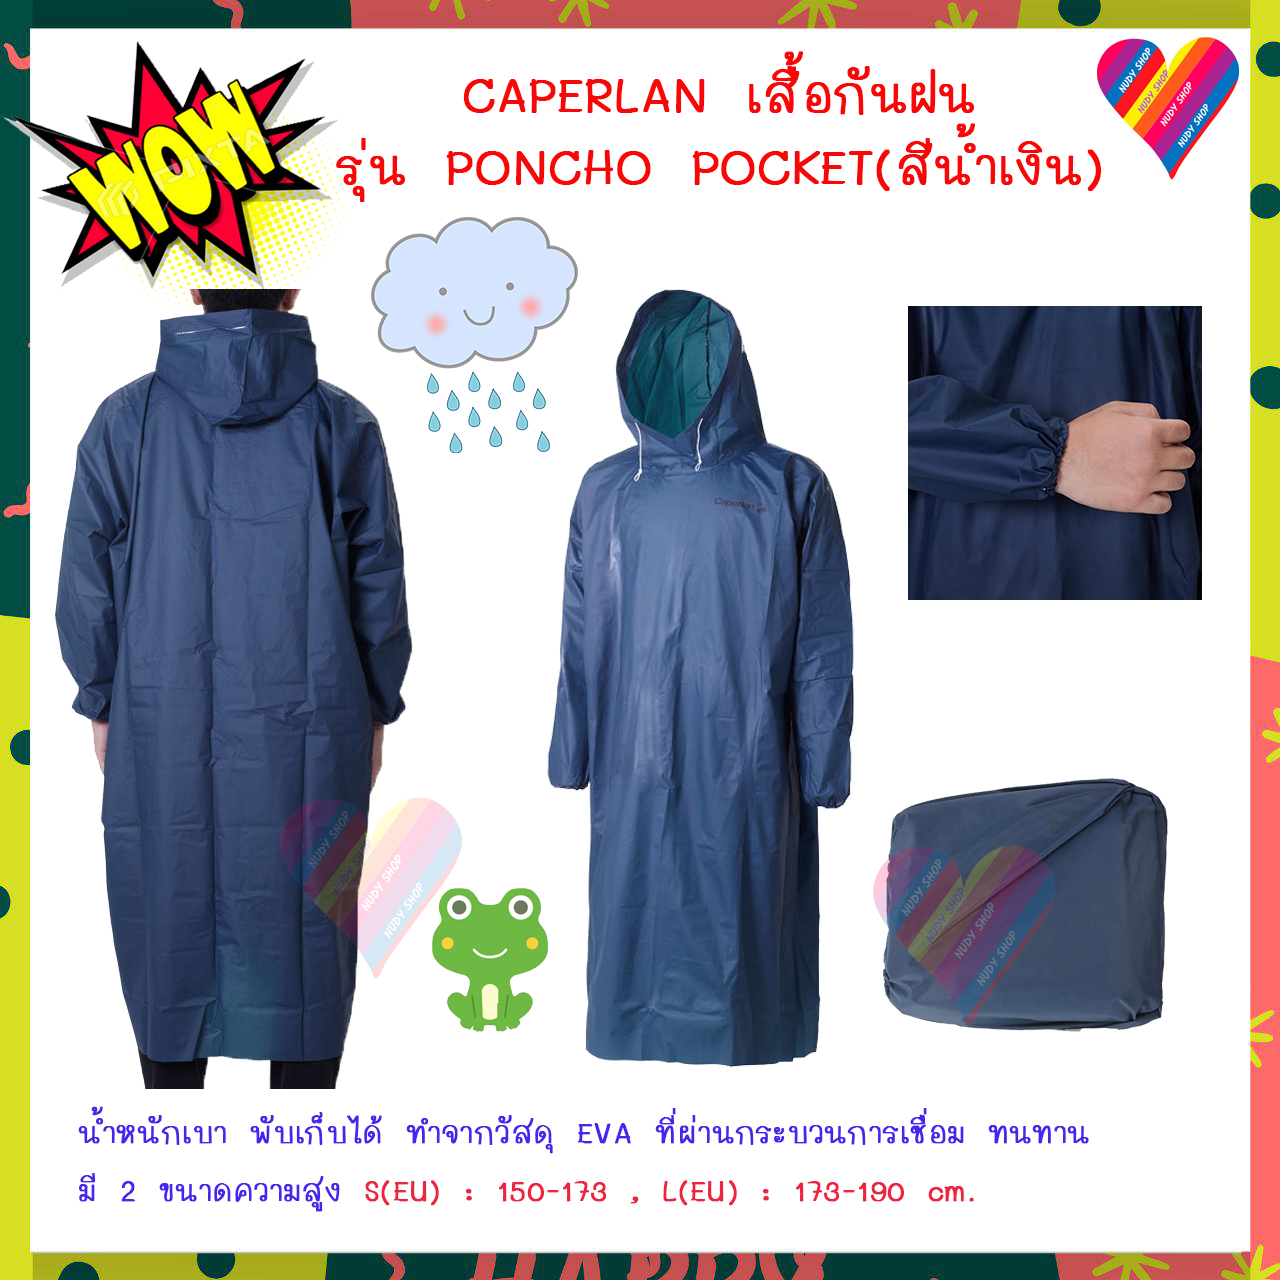 พร้อมส่ง ถูกๆ เสื้อกันฝน พับเก็บได้ CAPERLAN  ชุดกันน้ำ ชุดกันฝน เสื้อปอนโช PONCHO POCKET(สีน้ำเงินเข้ม) poncho rain coat ชุดกันฝนพับเก็บ